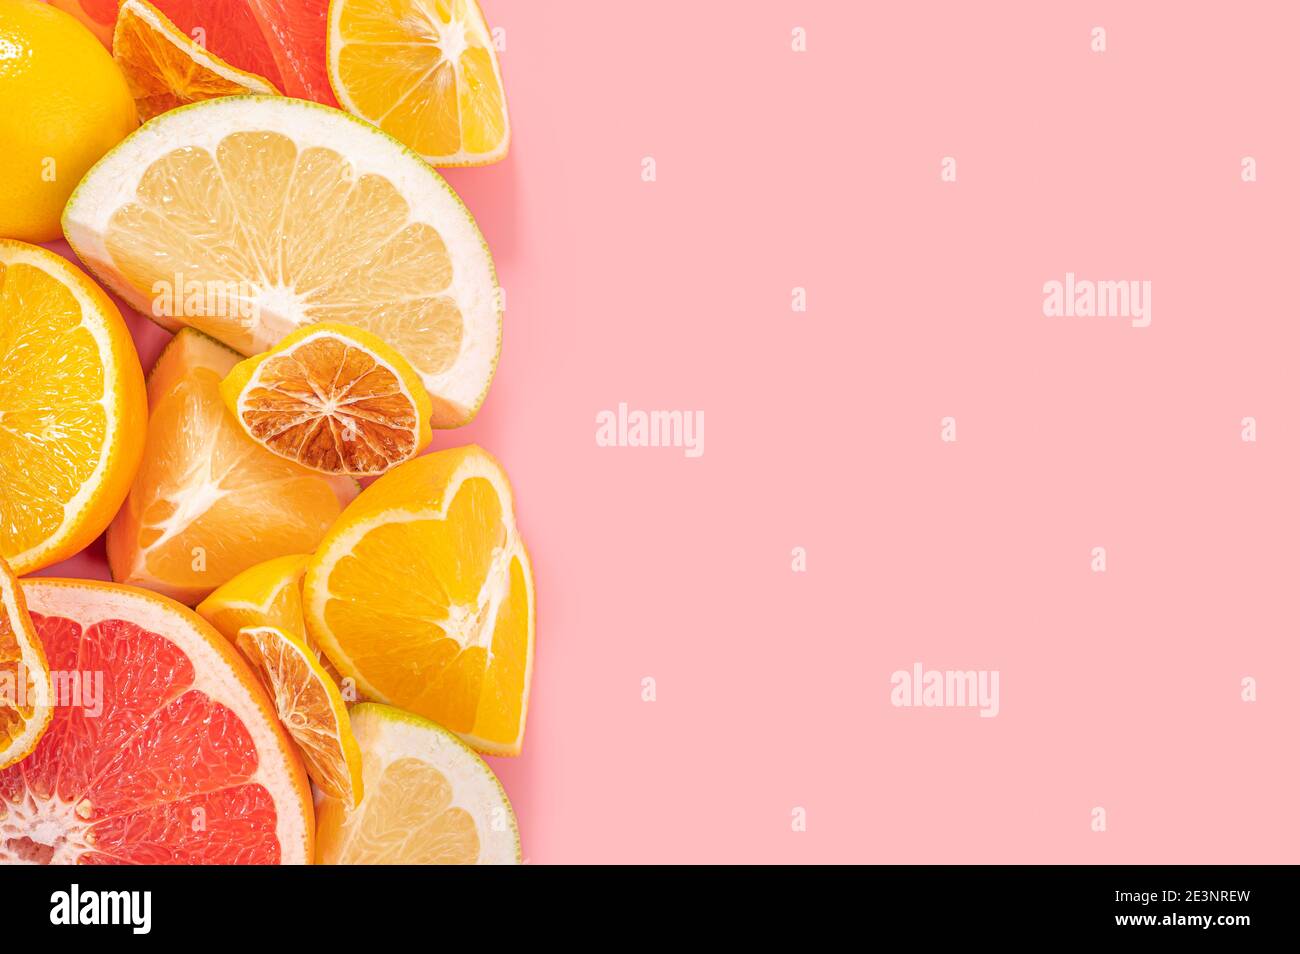 Tranches de pamplemousse orange, rose et citron sur fond rose. Composition minimale. Cadre alimentaire aux fruits. Alimentation et alimentation saines. Vue de dessus plat l Banque D'Images